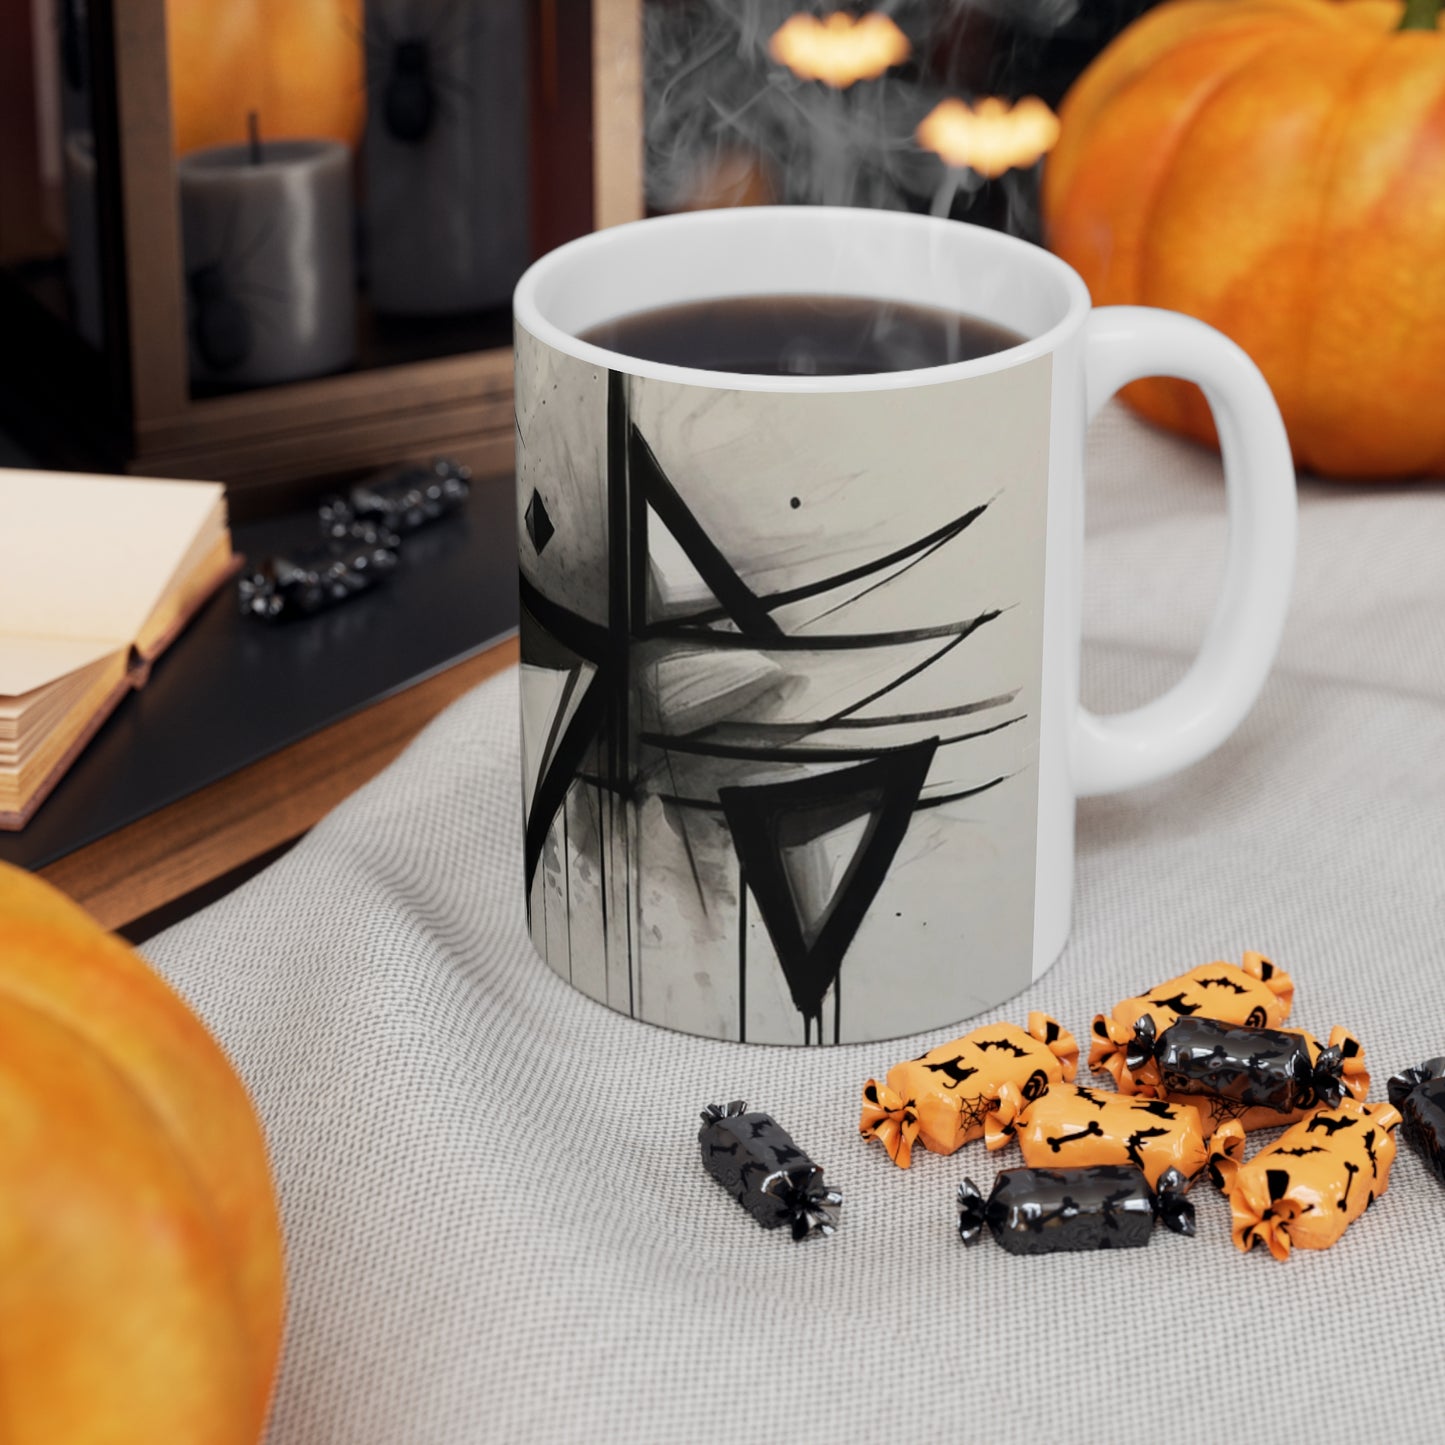 Sketched Triangles Mug - Ceramic Coffee Mug 11oz